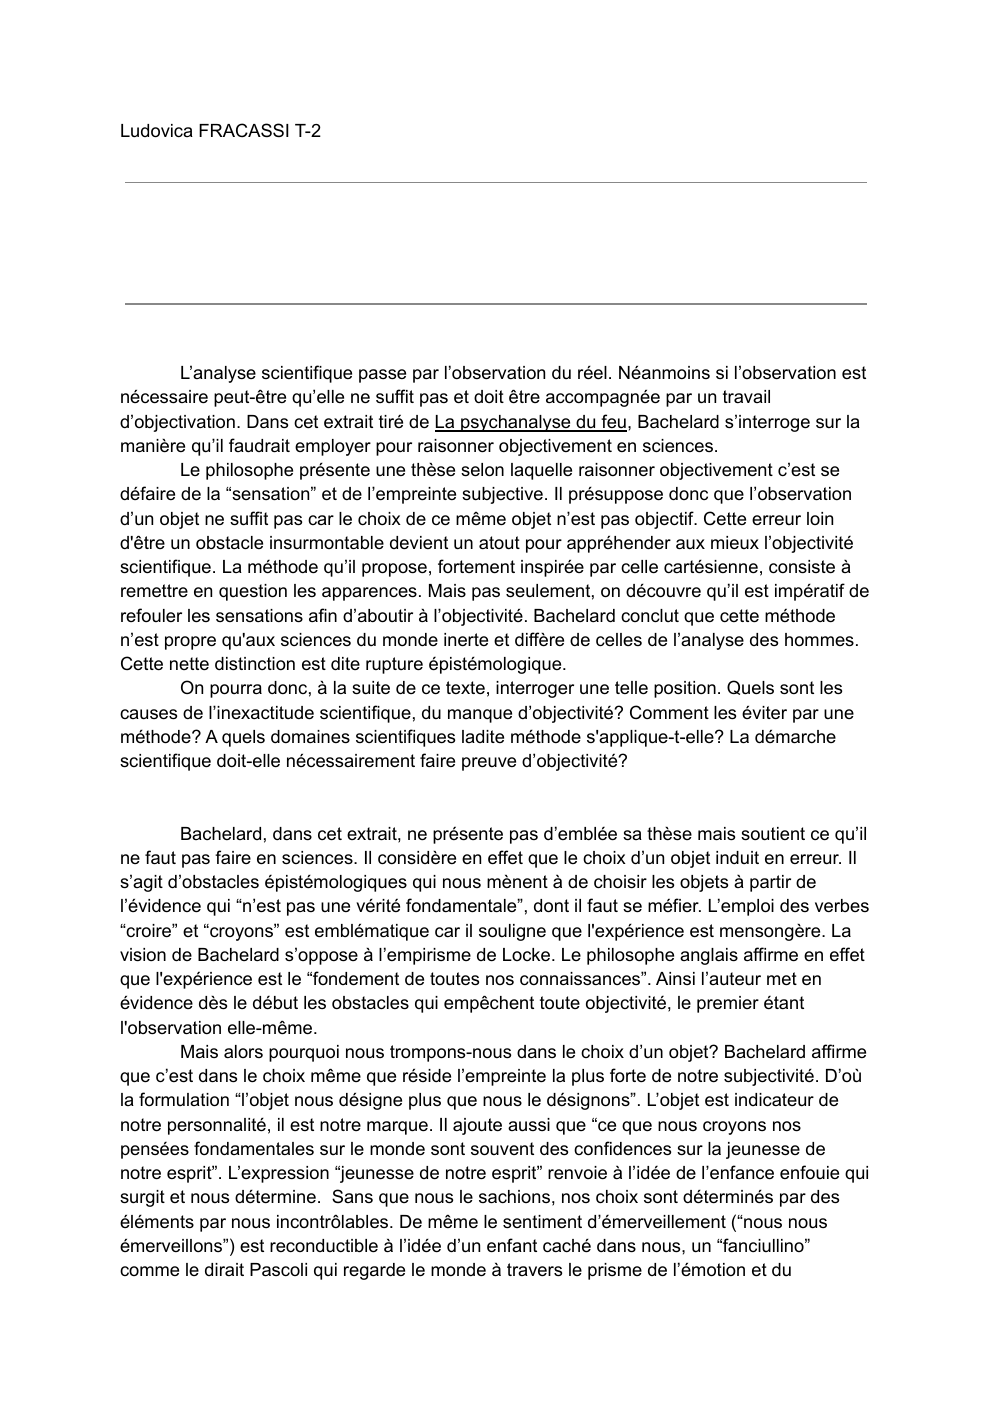 Prévisualisation du document Explication de texte philosophique extrait tiré de La psychanalyse du feu, Bachelard